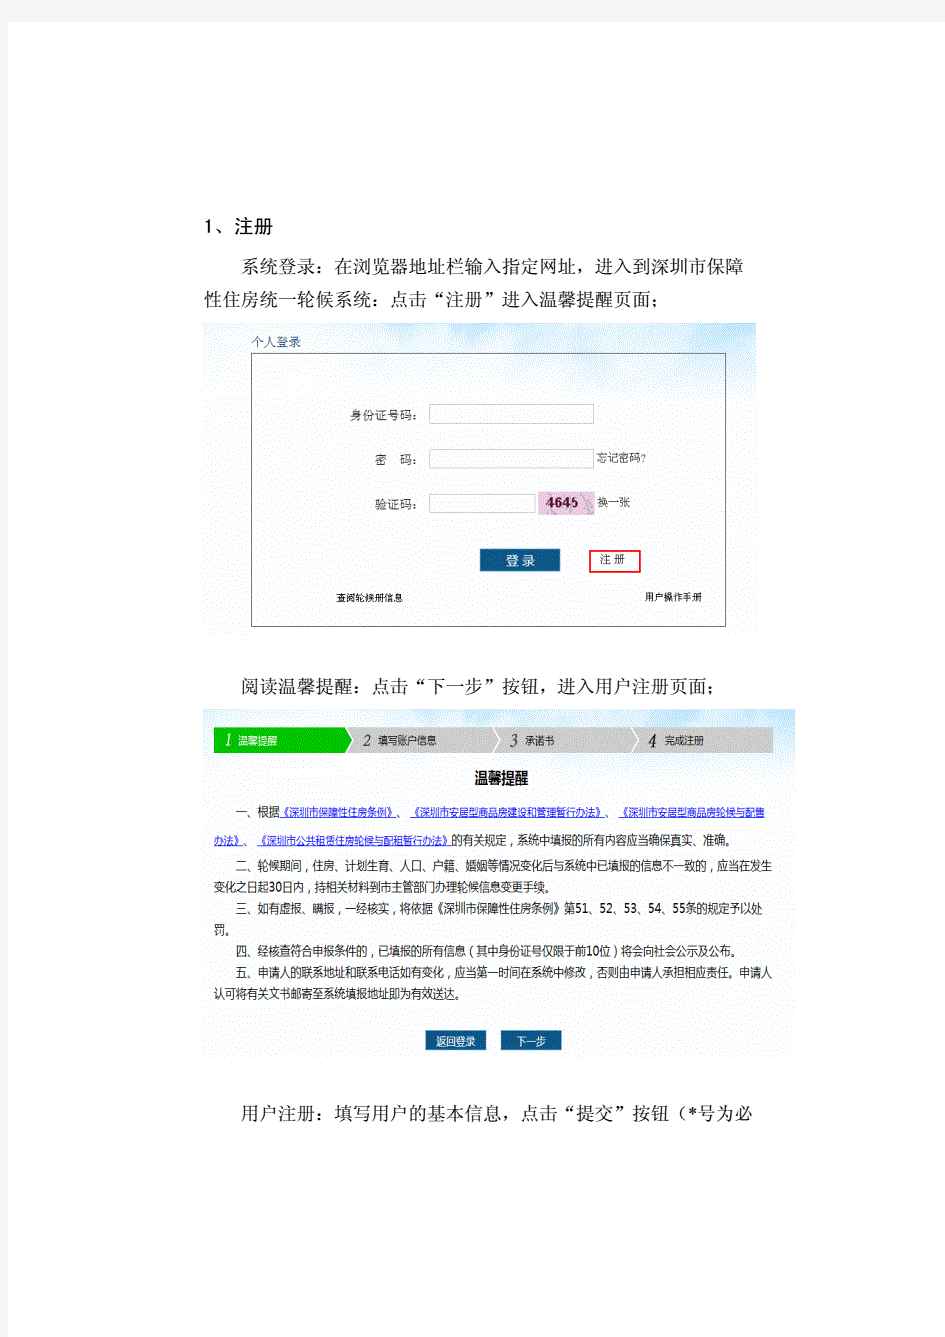 深圳市保障性住房轮候系统-统一身份认证平台